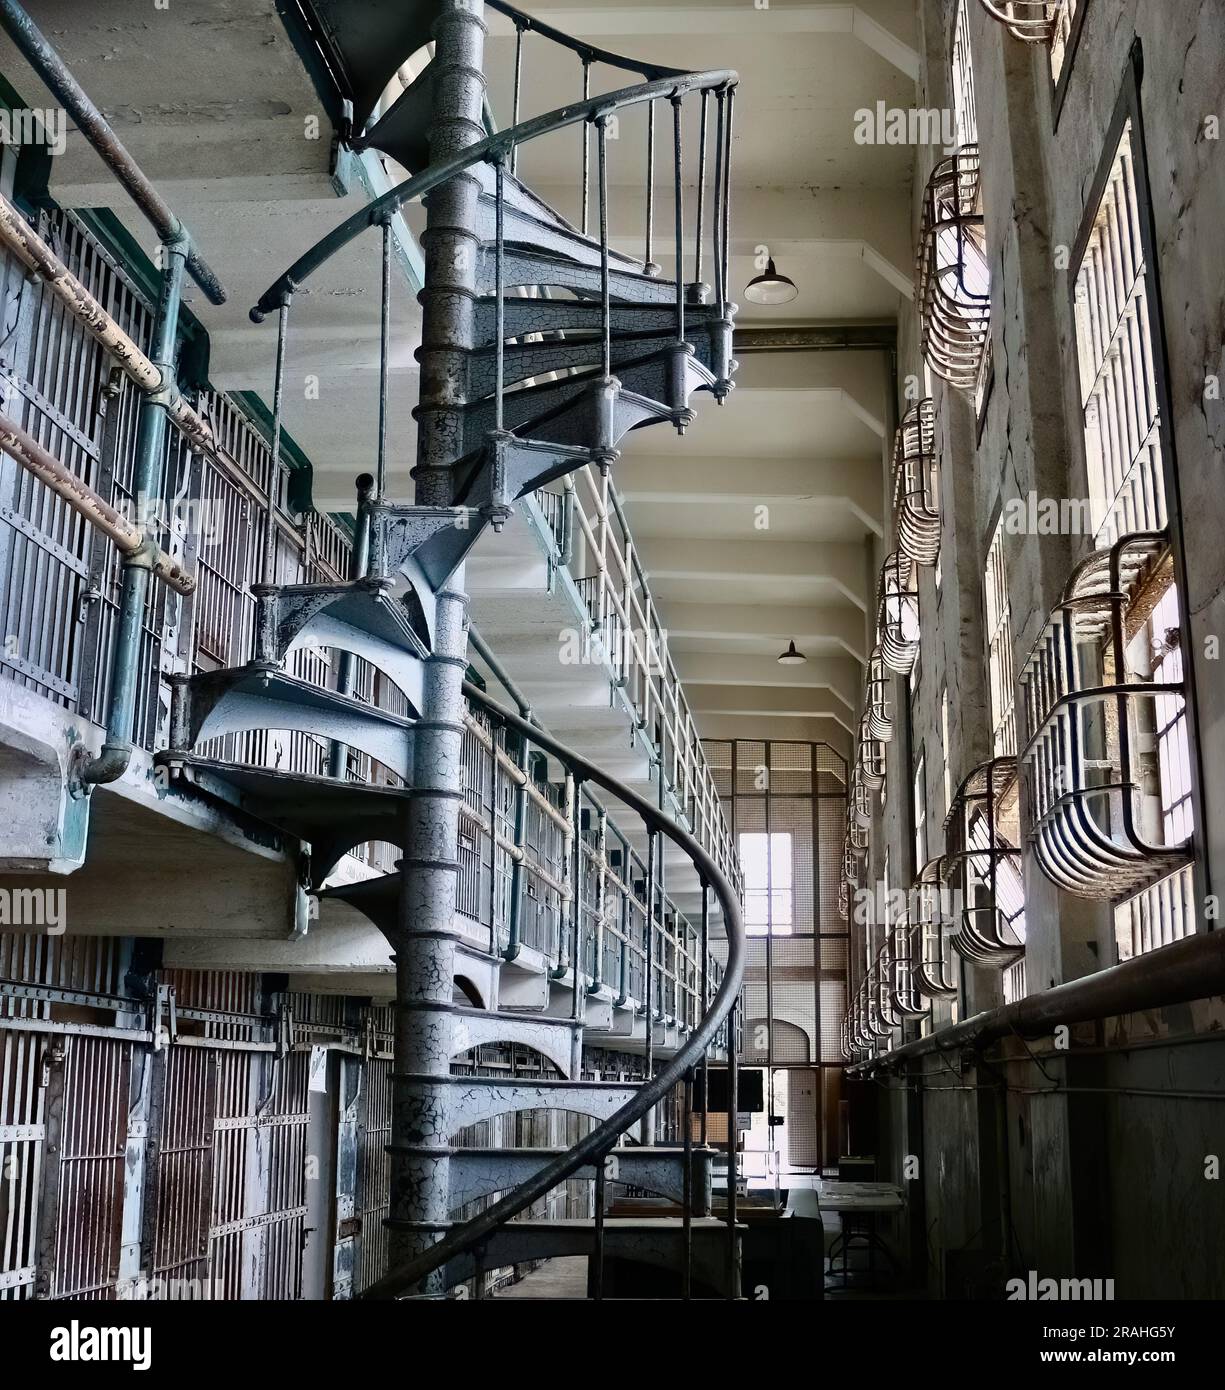 À l'intérieur du pénitencier fédéral d'Alcatraz avec un escalier en colimaçon menant à des couloirs avec cellules Alcatraz Island San Francisco California USA Banque D'Images